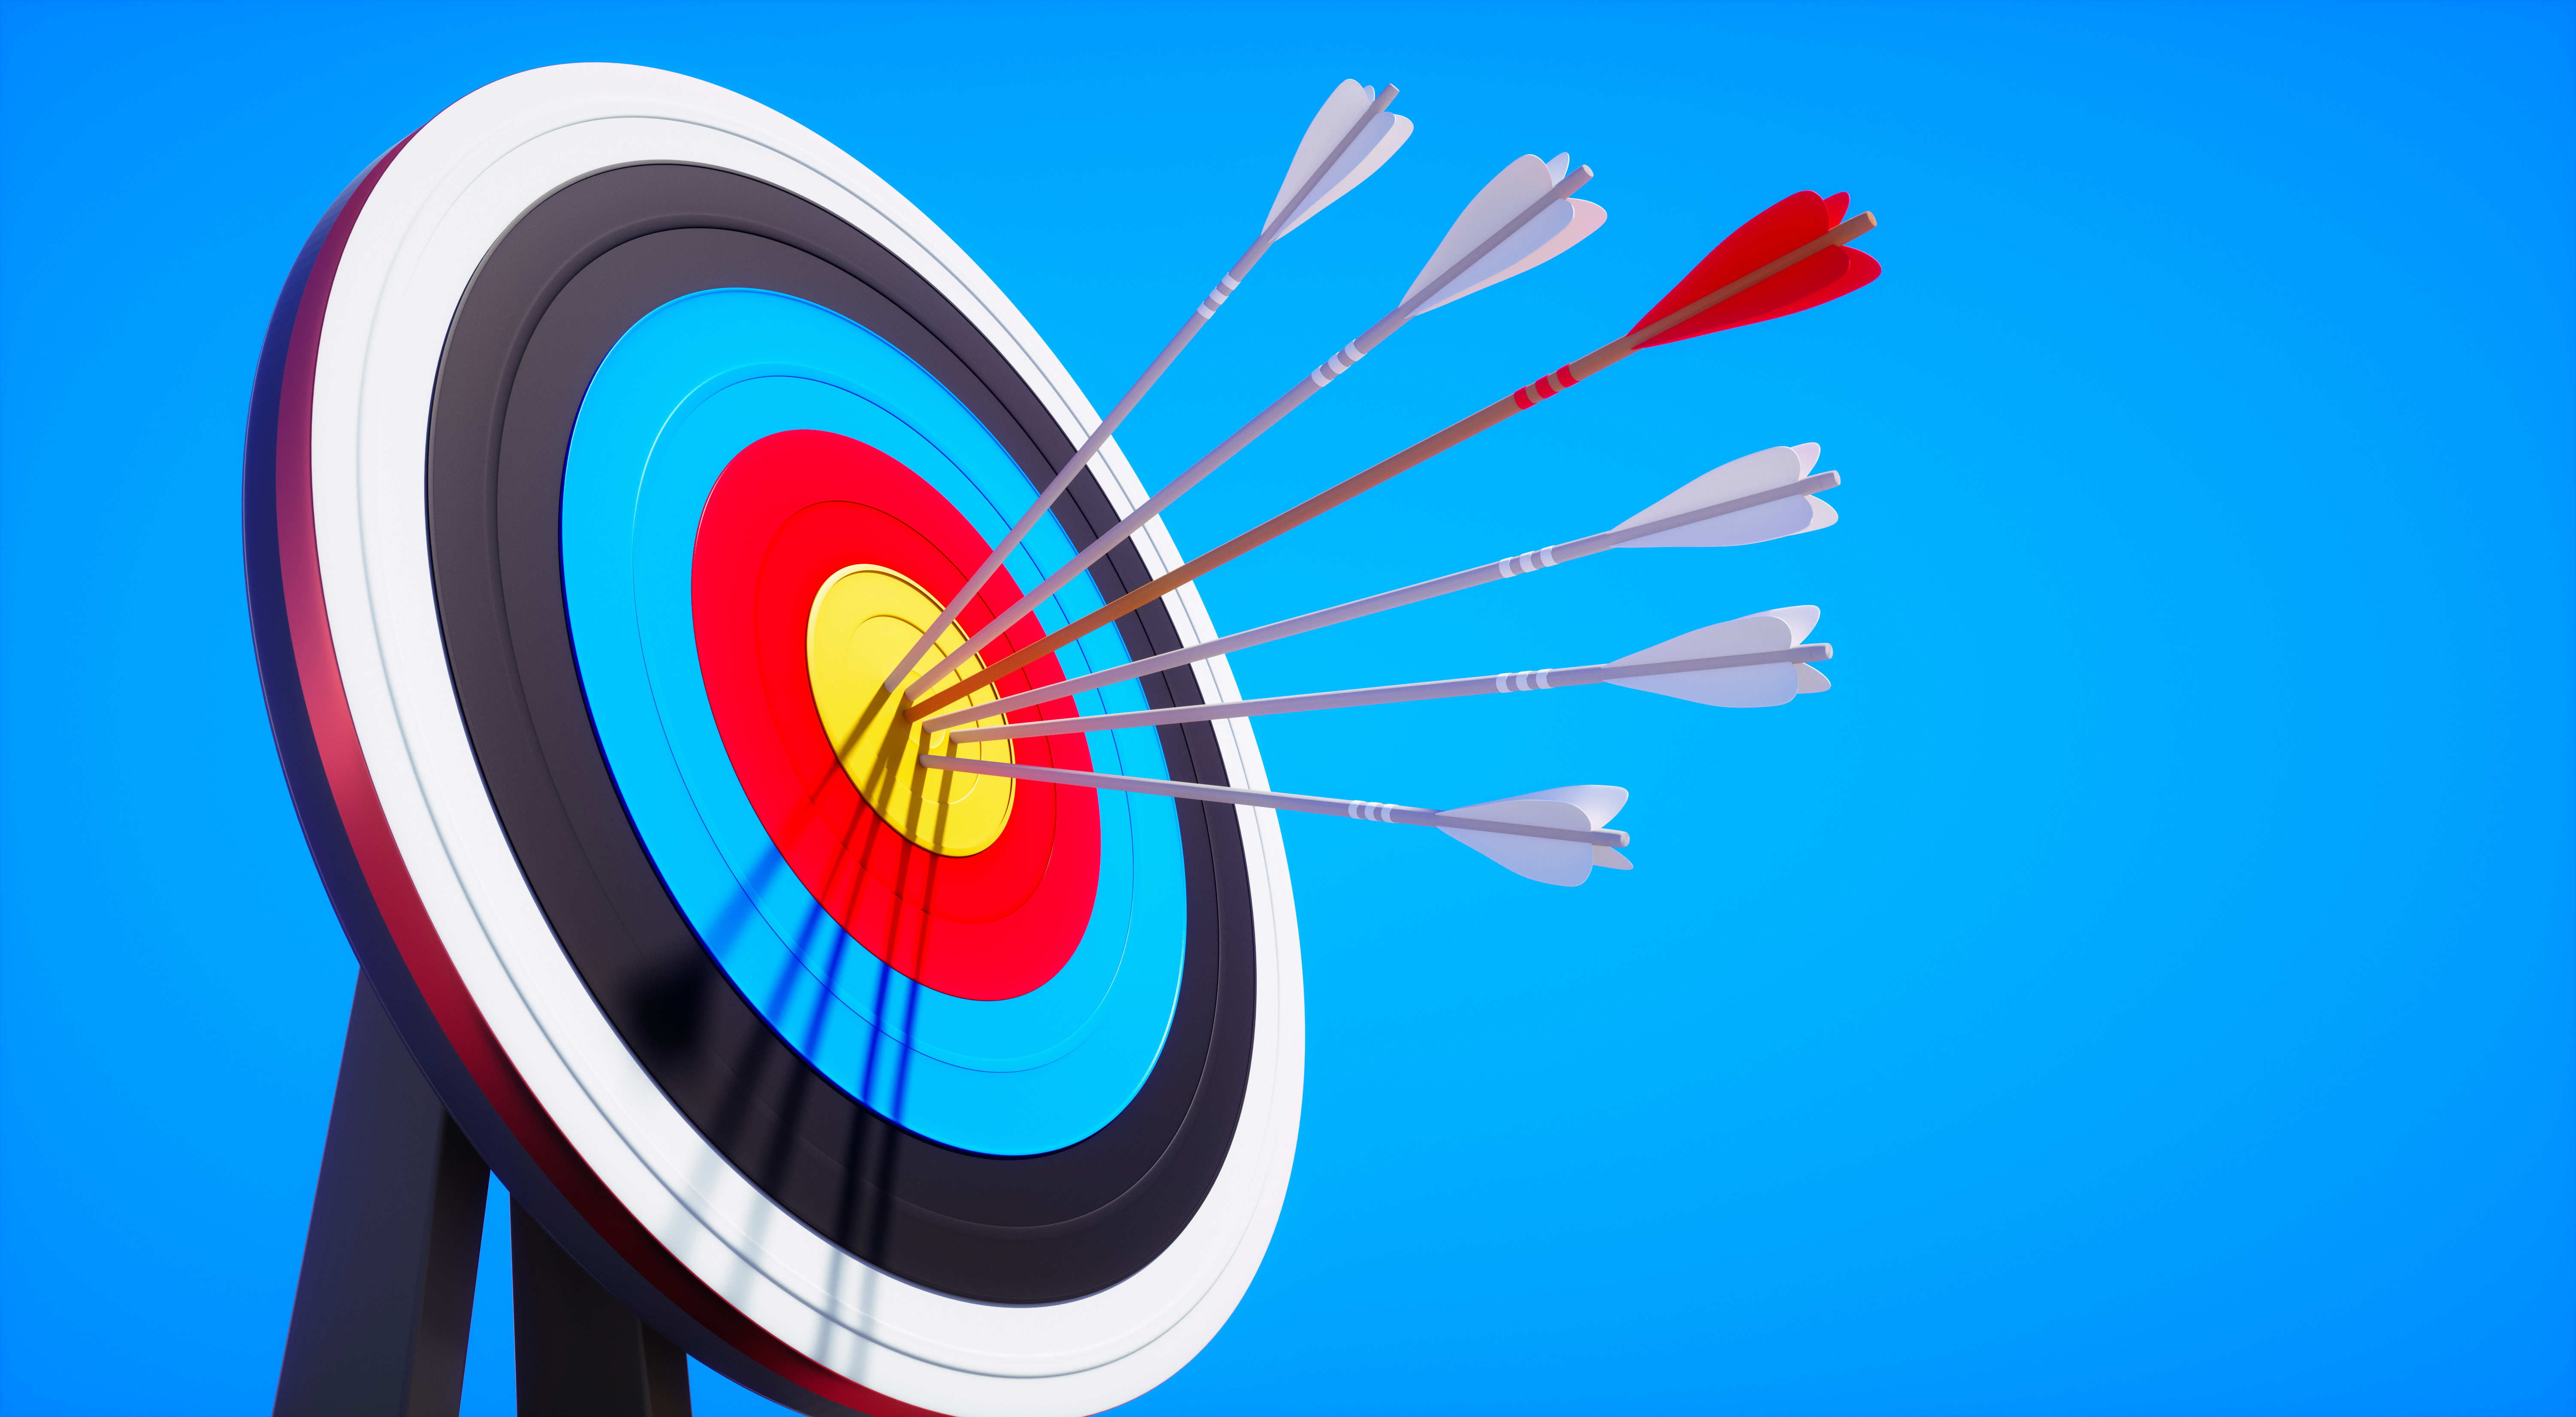 An archery target with arrows in the bullseye, against a blue sky